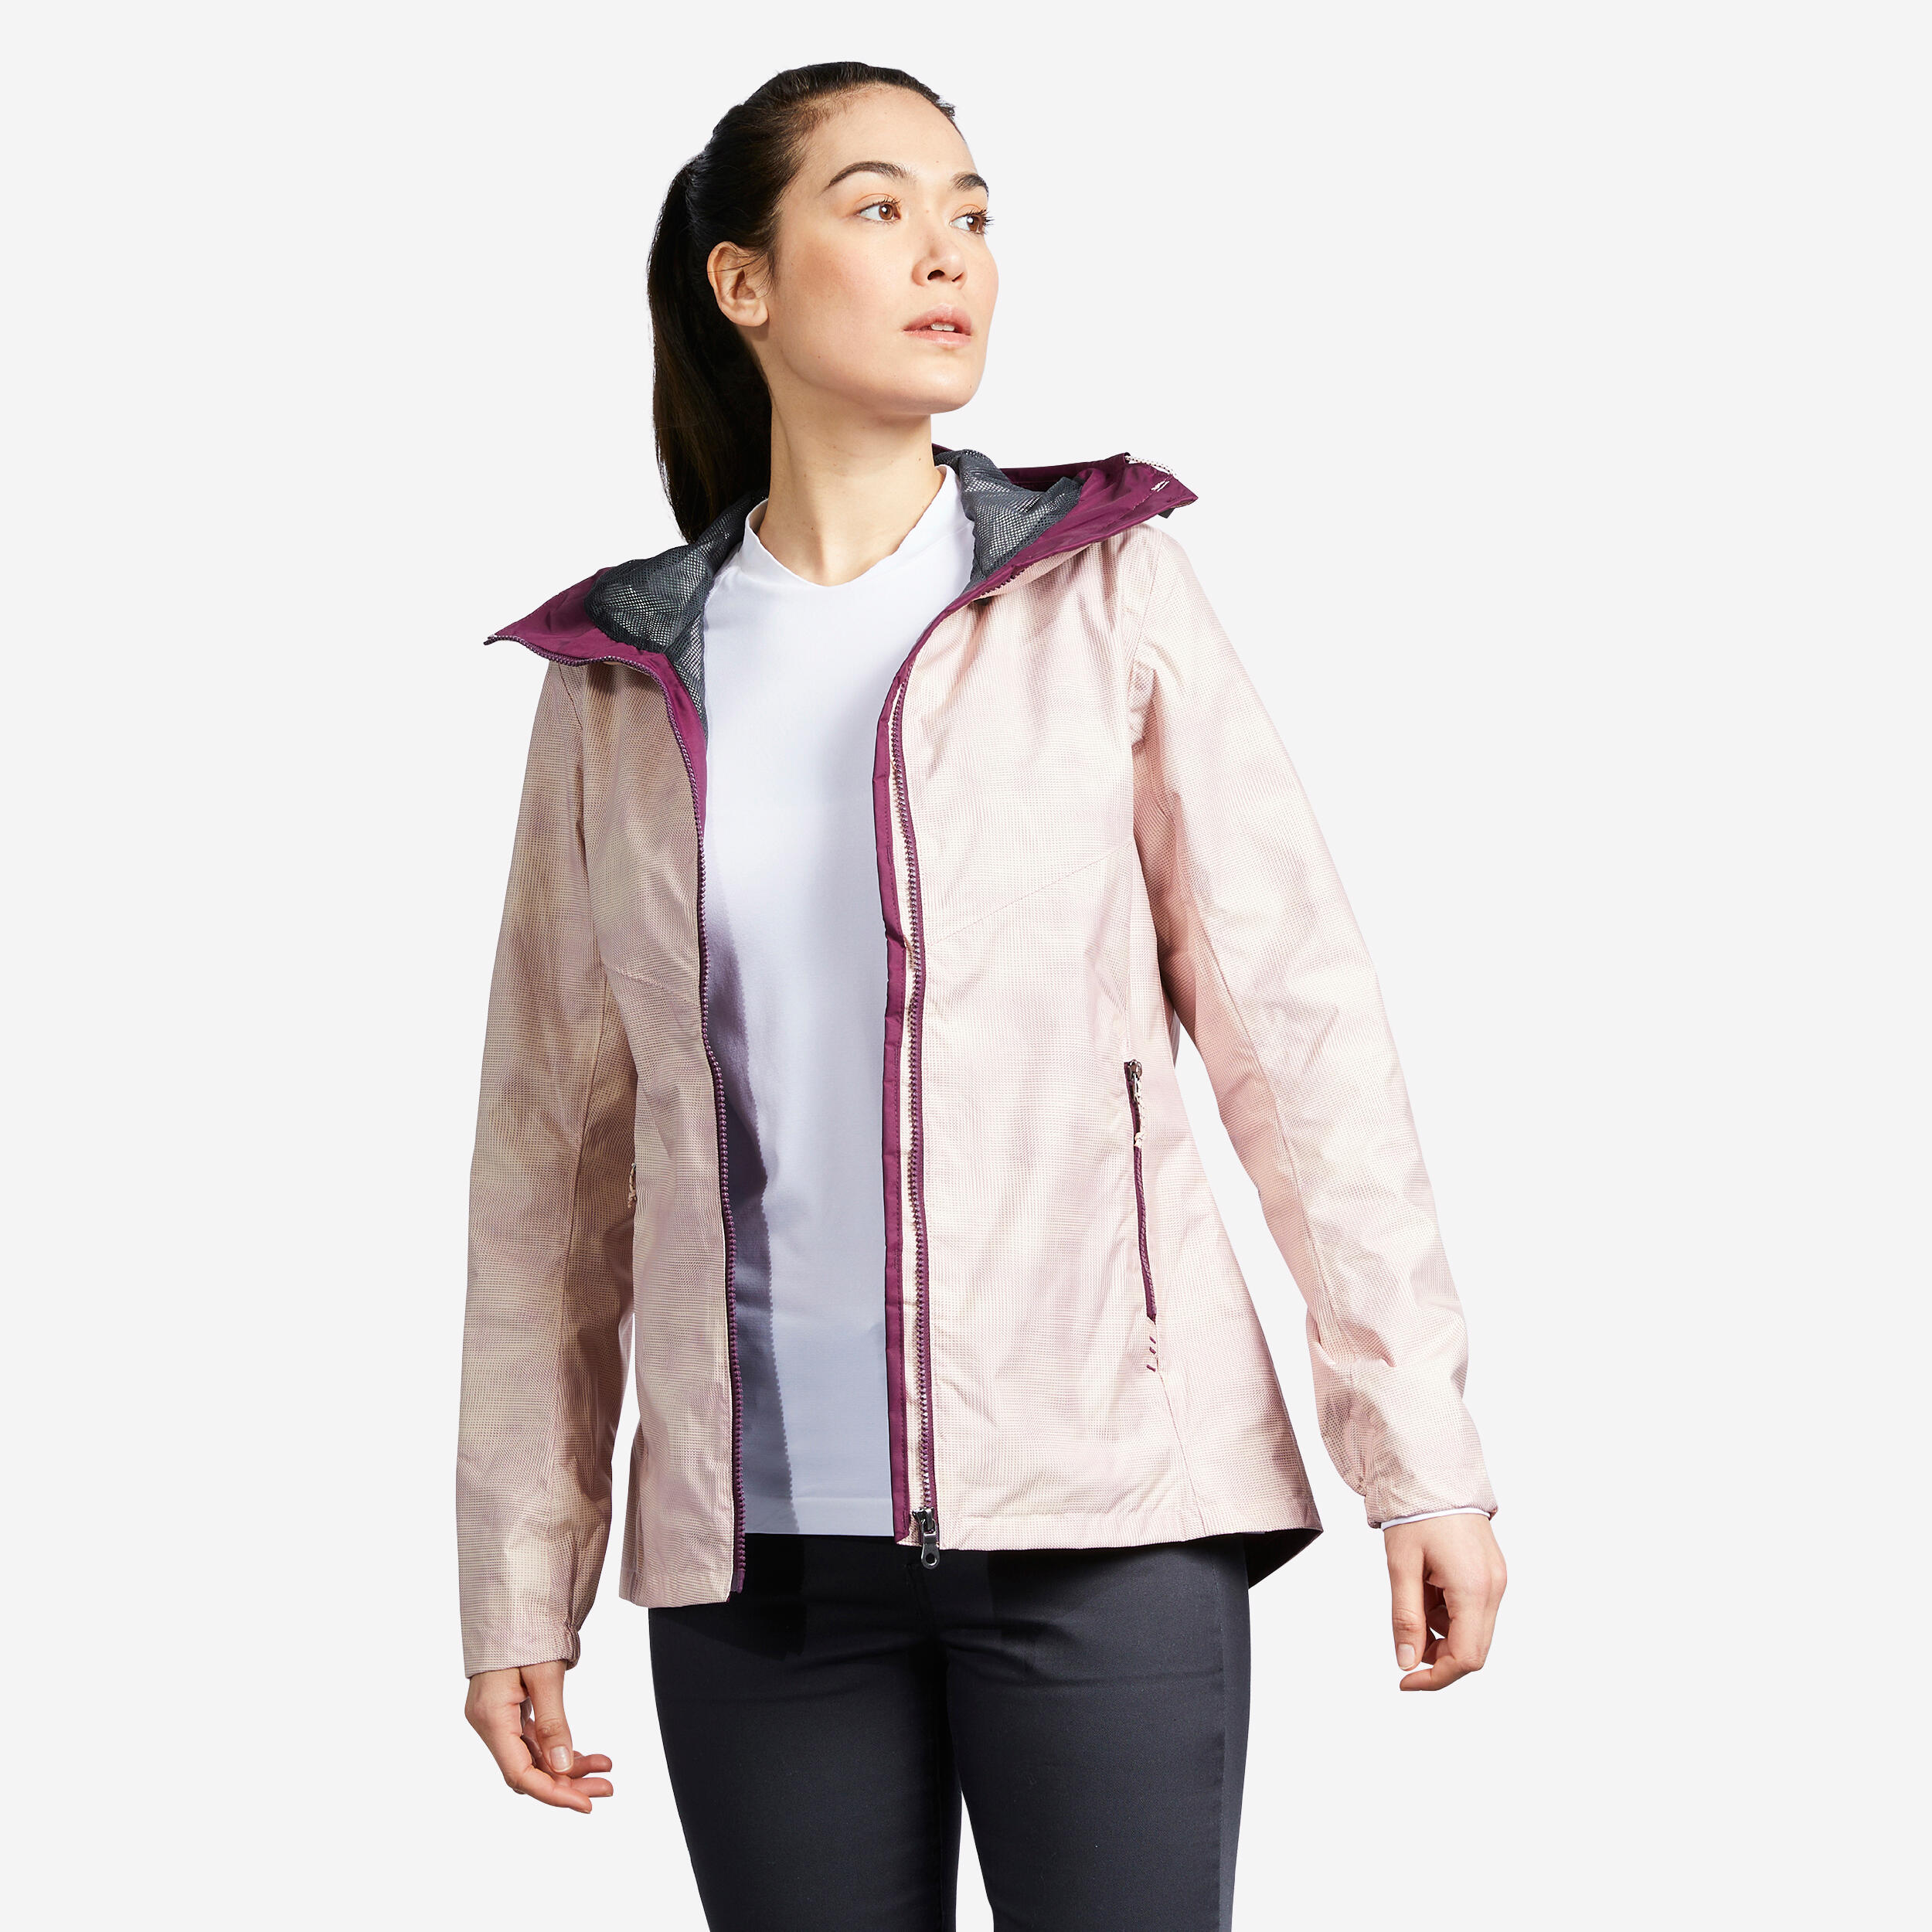 Women's Waterproof Jackets & Rain Coats